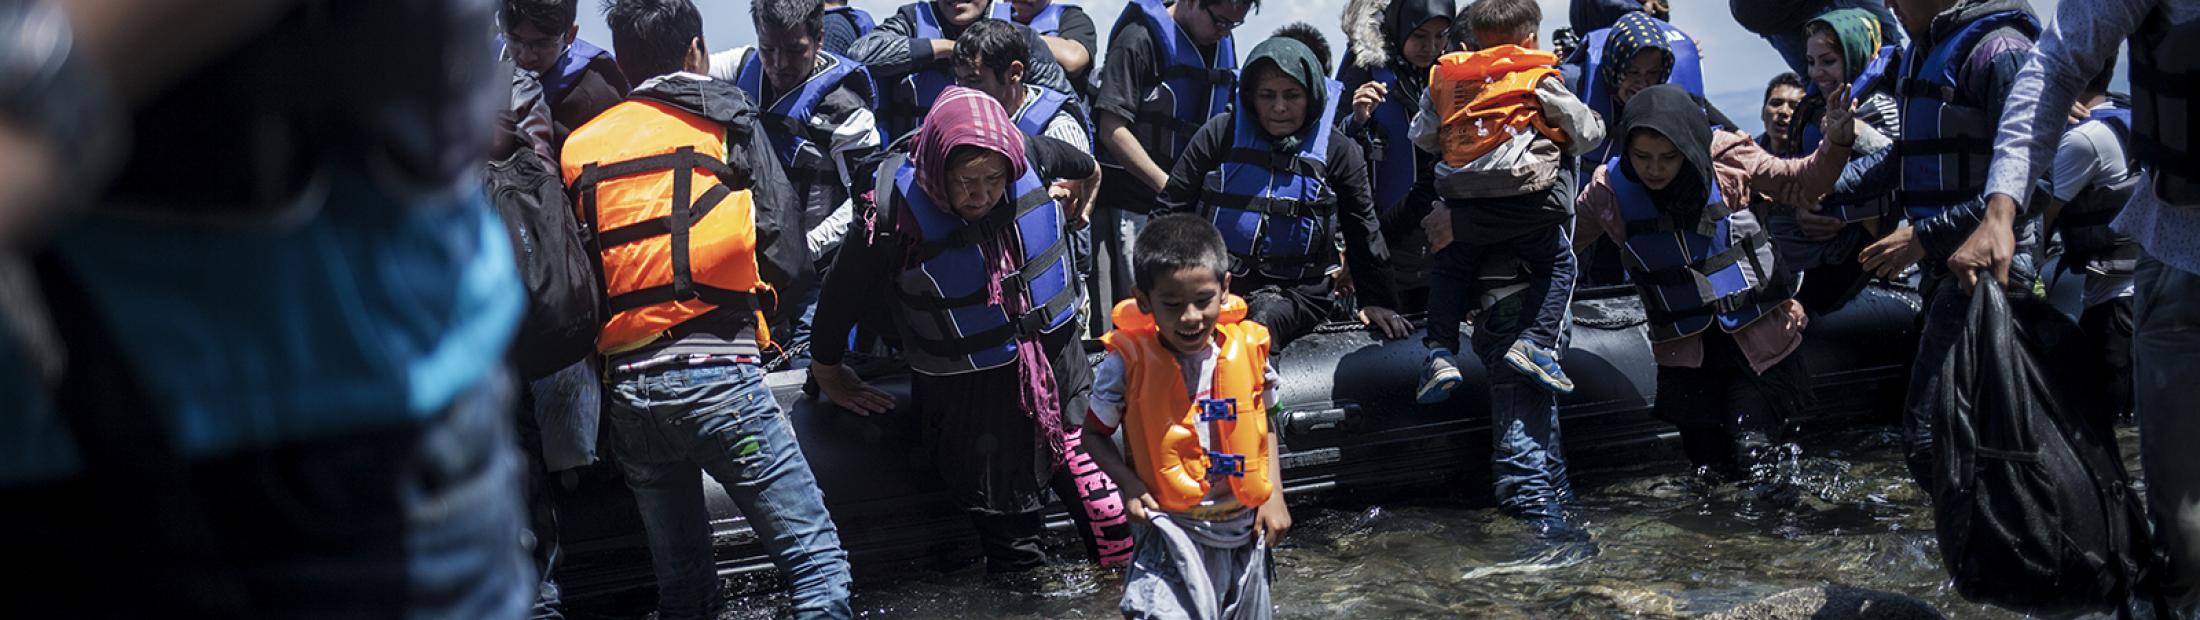 El aumento de refugiados y desplazados eleva las solicitudes de asilo a las cifras más altas en 22 años